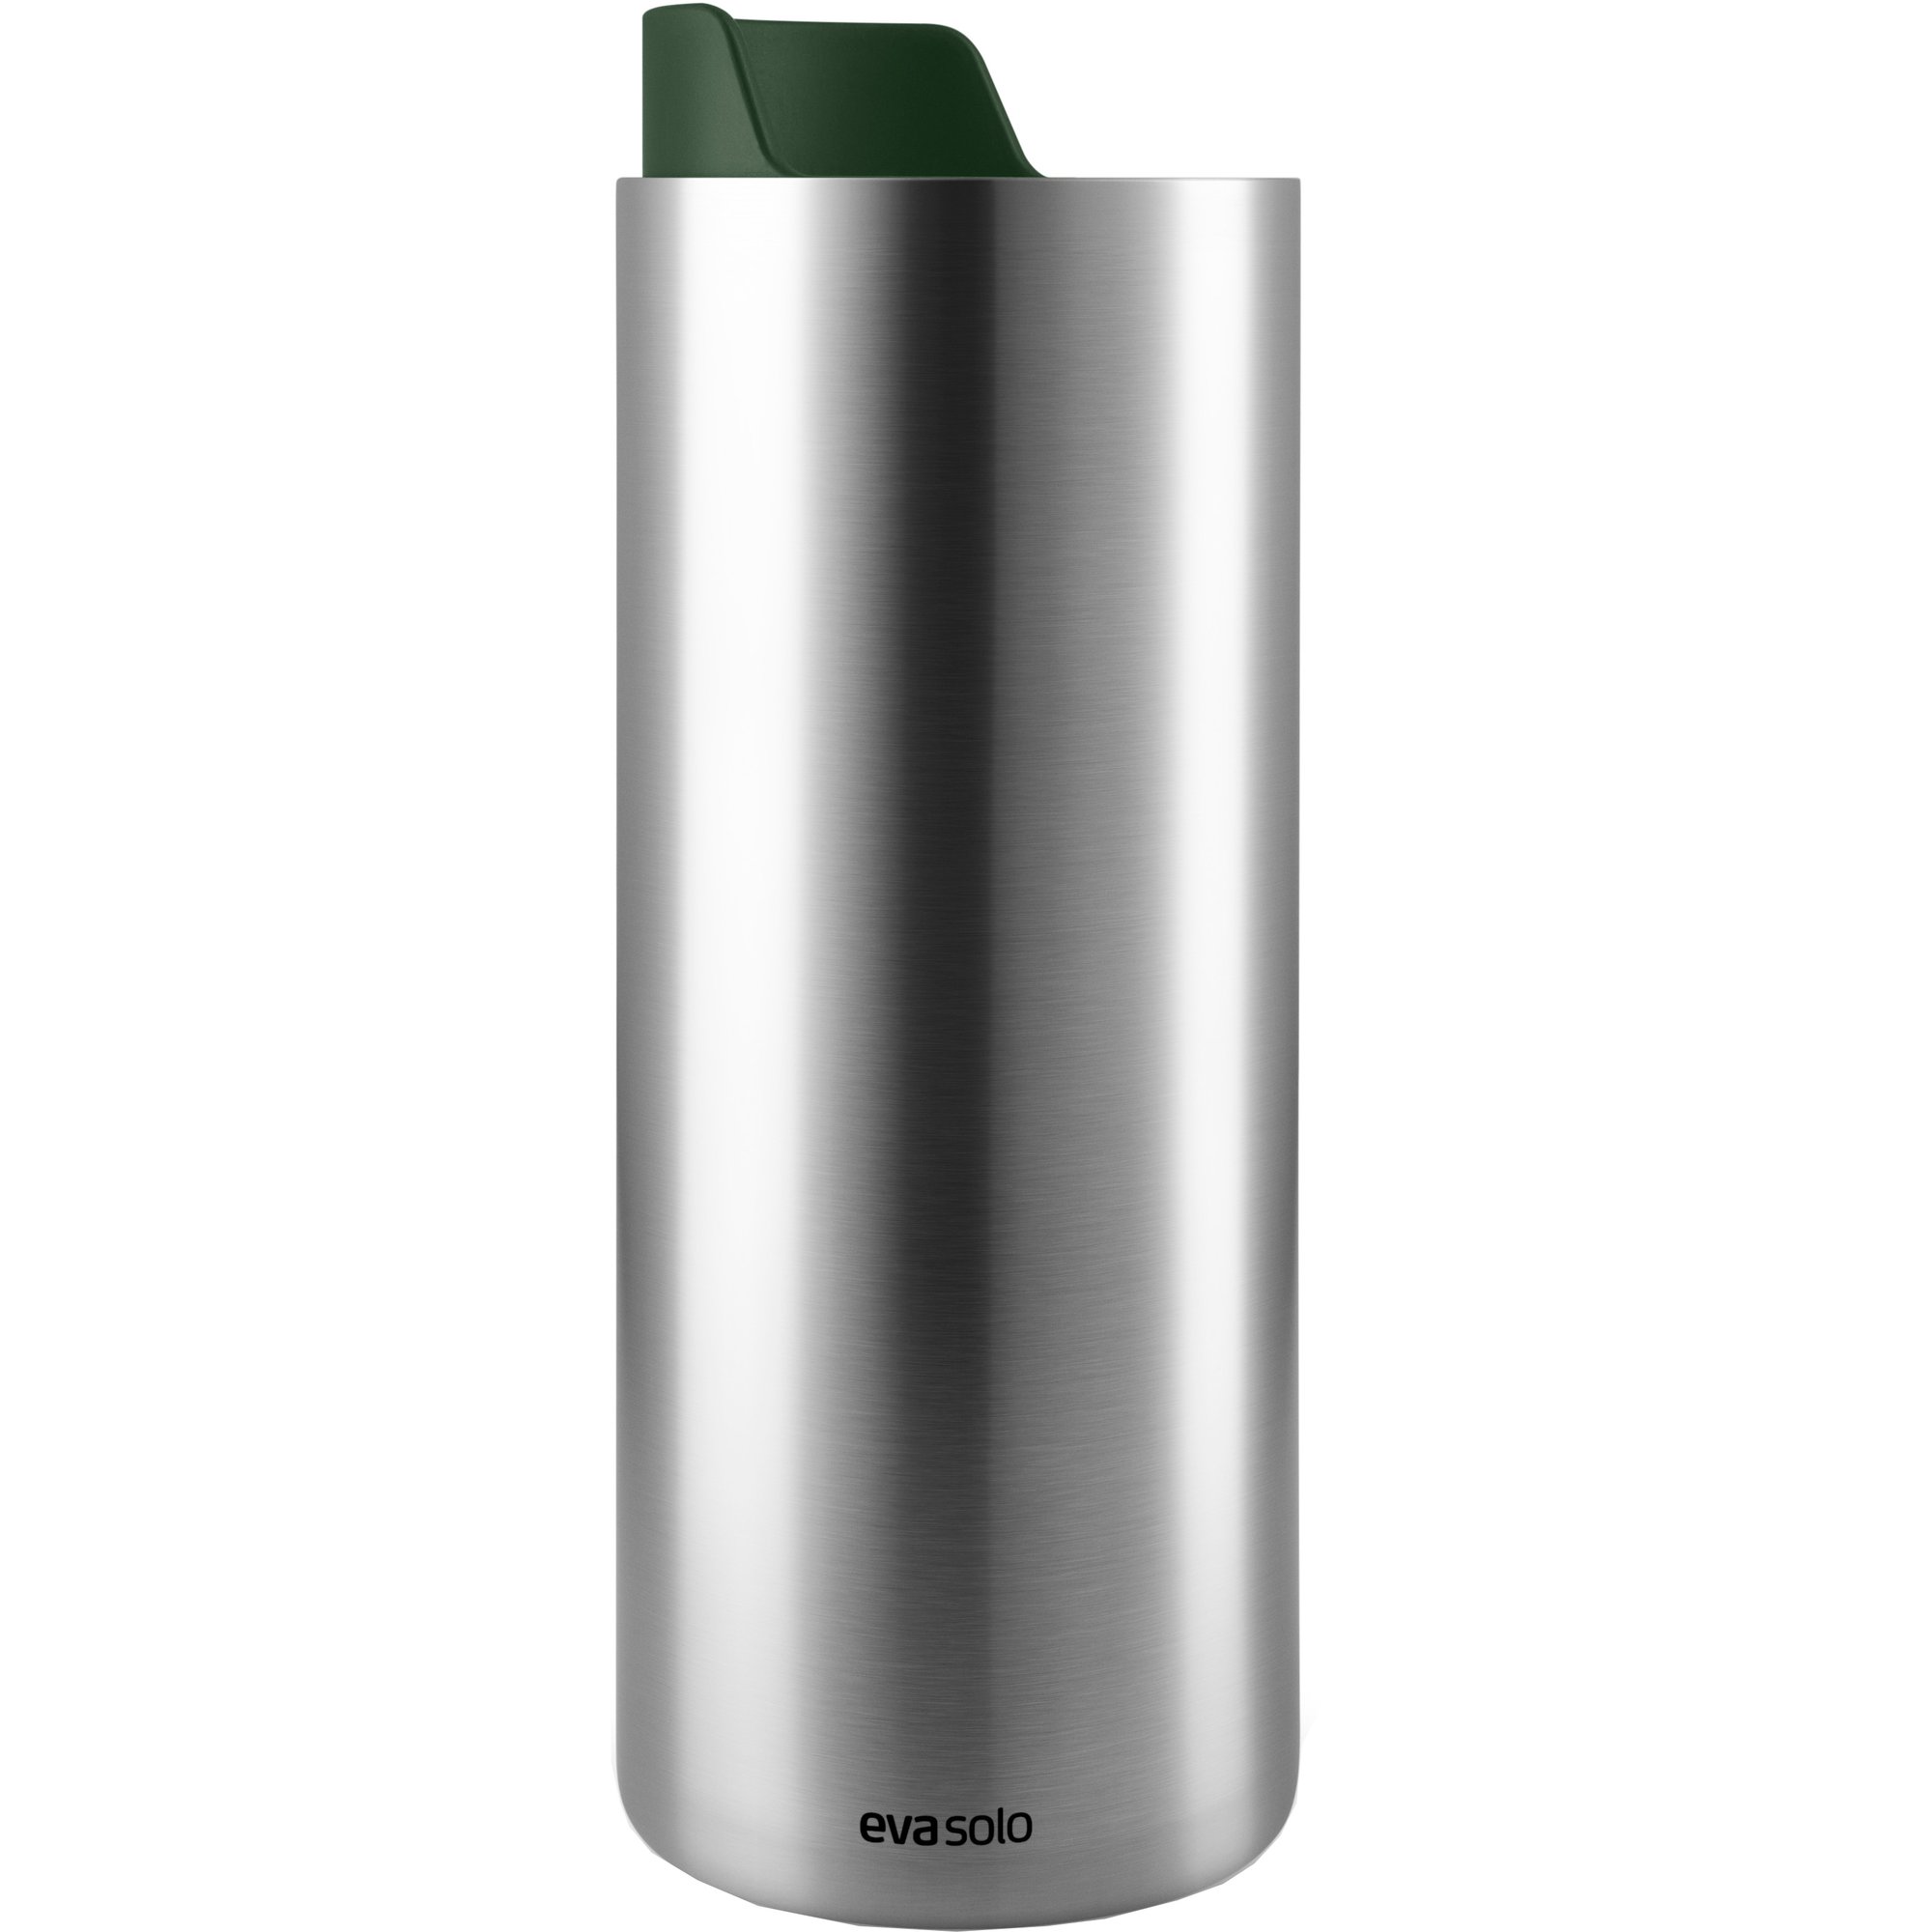 Eva Solo Urban To Go Cup Recycled termosmugg 0,35 liter emerald green